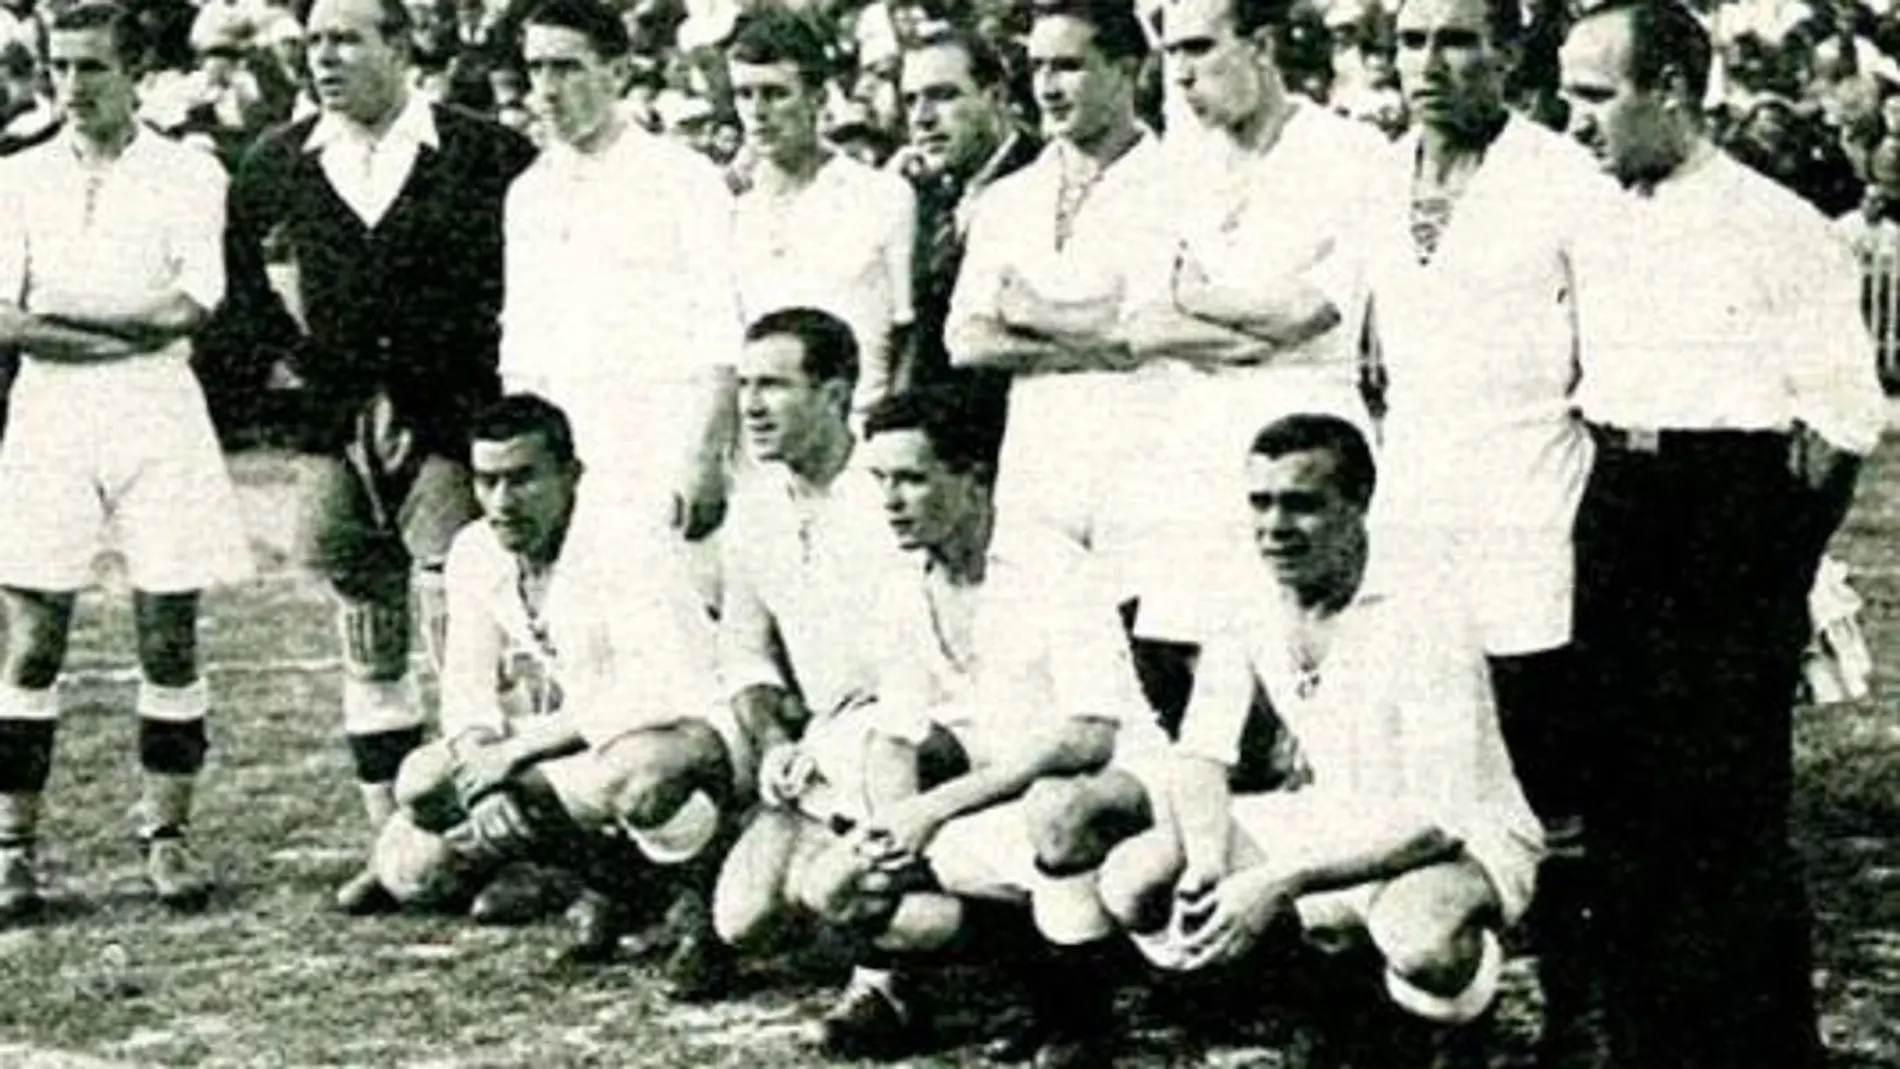 Real Madrid, campeón de Copa en 1936